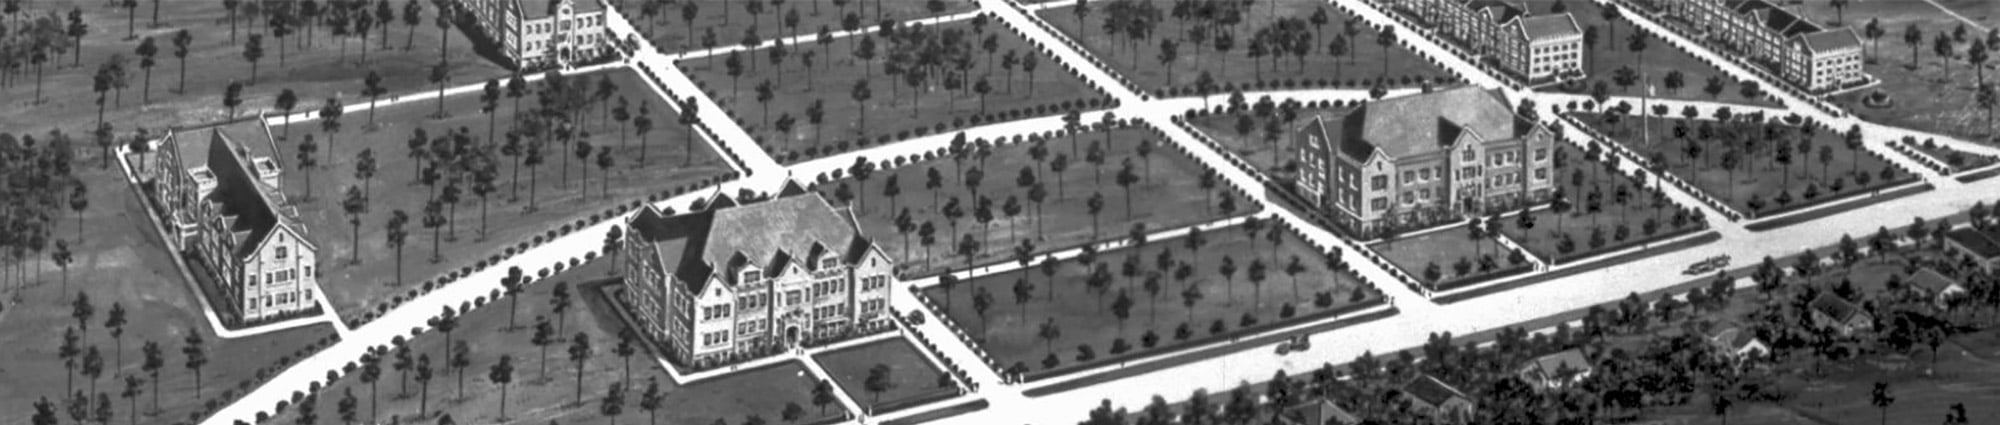 University of Florida Historical Layout